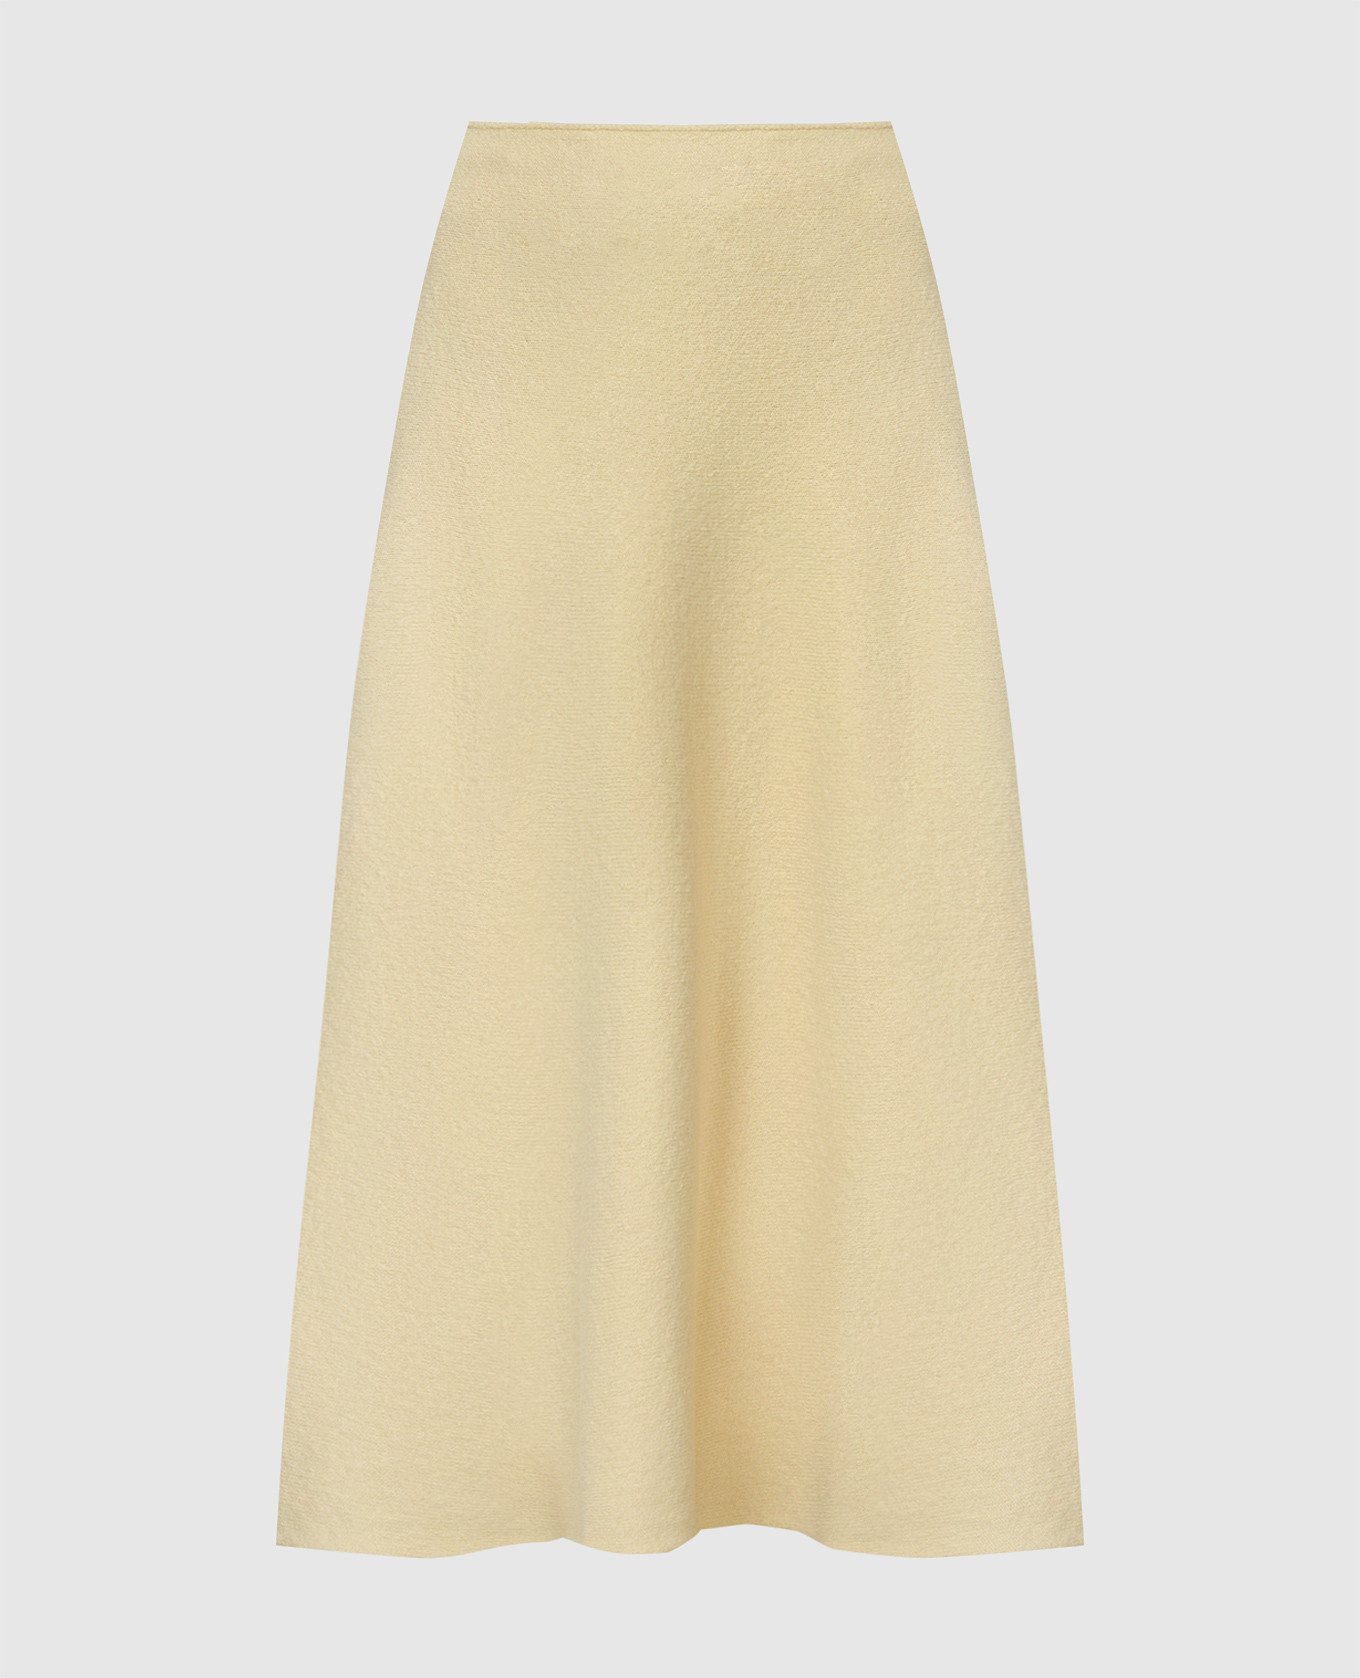 Yellow woolen skirt